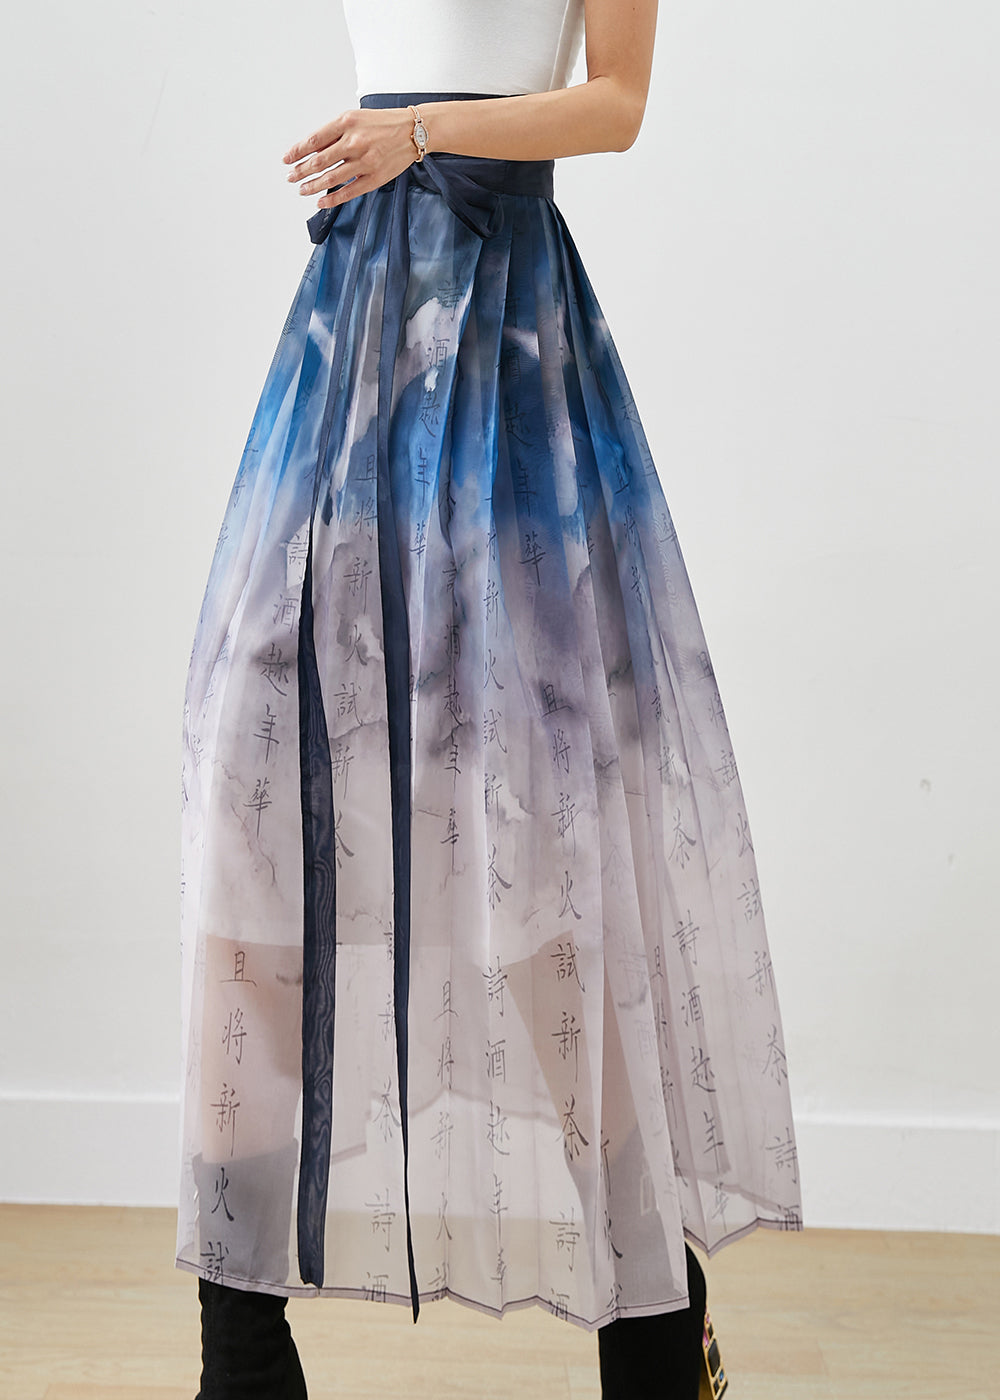 Art Tie Waist Tie Dye Silk A Line Skirt Fall